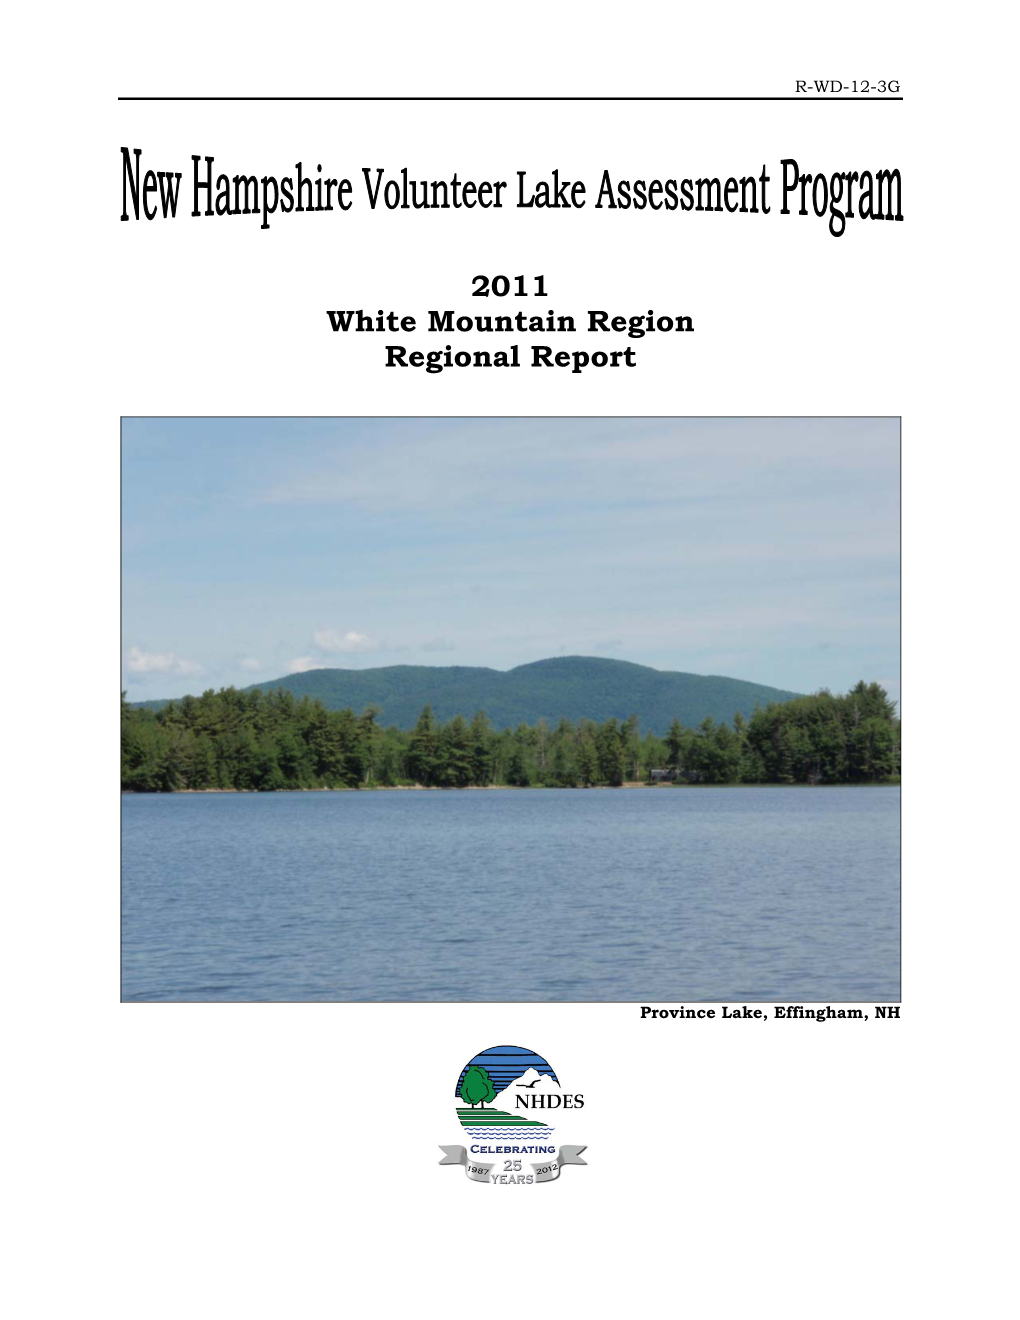 2011 Regional Lake Report